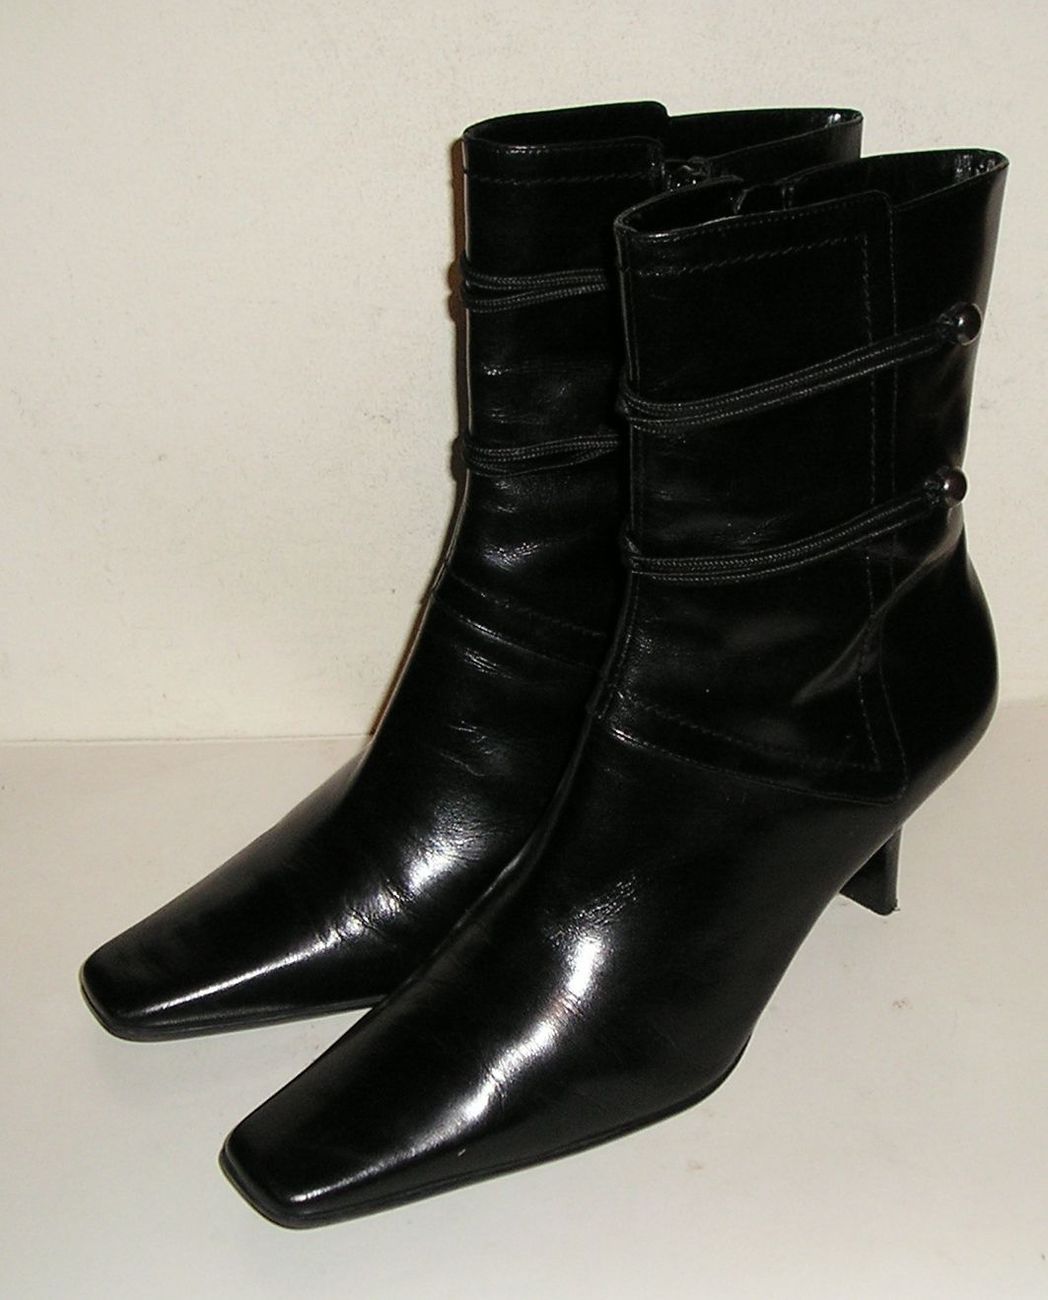 NINE WEST SYD Women's Black Leather Fashion Dress Zipper Ankle Boots Shoes 7 M - $34.99